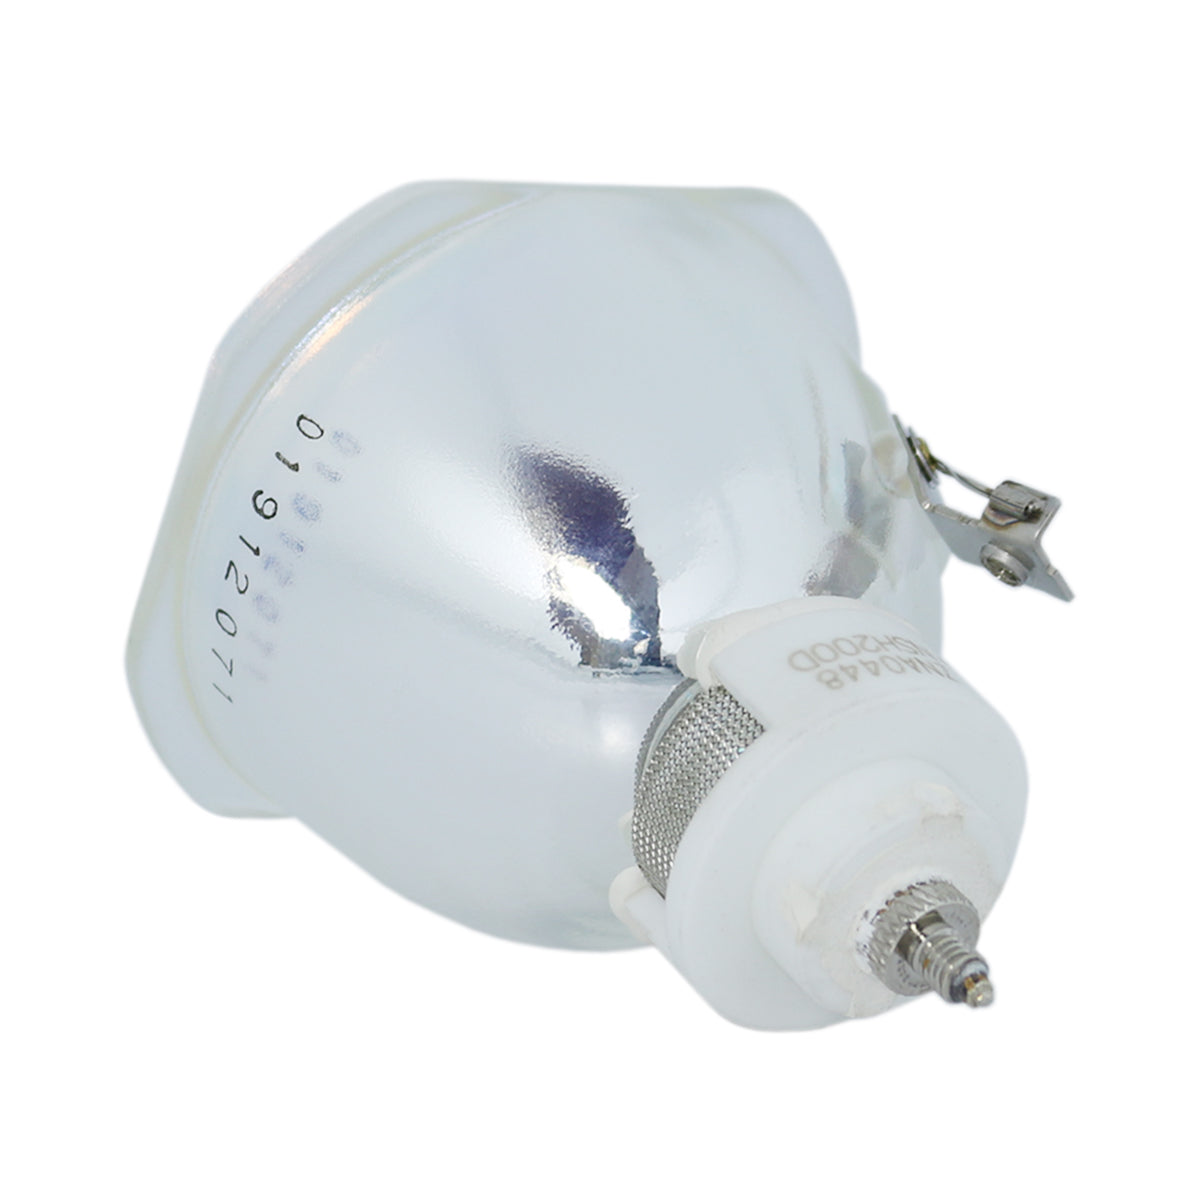 Runco 151-1028-00 Ushio Projector Bare Lamp